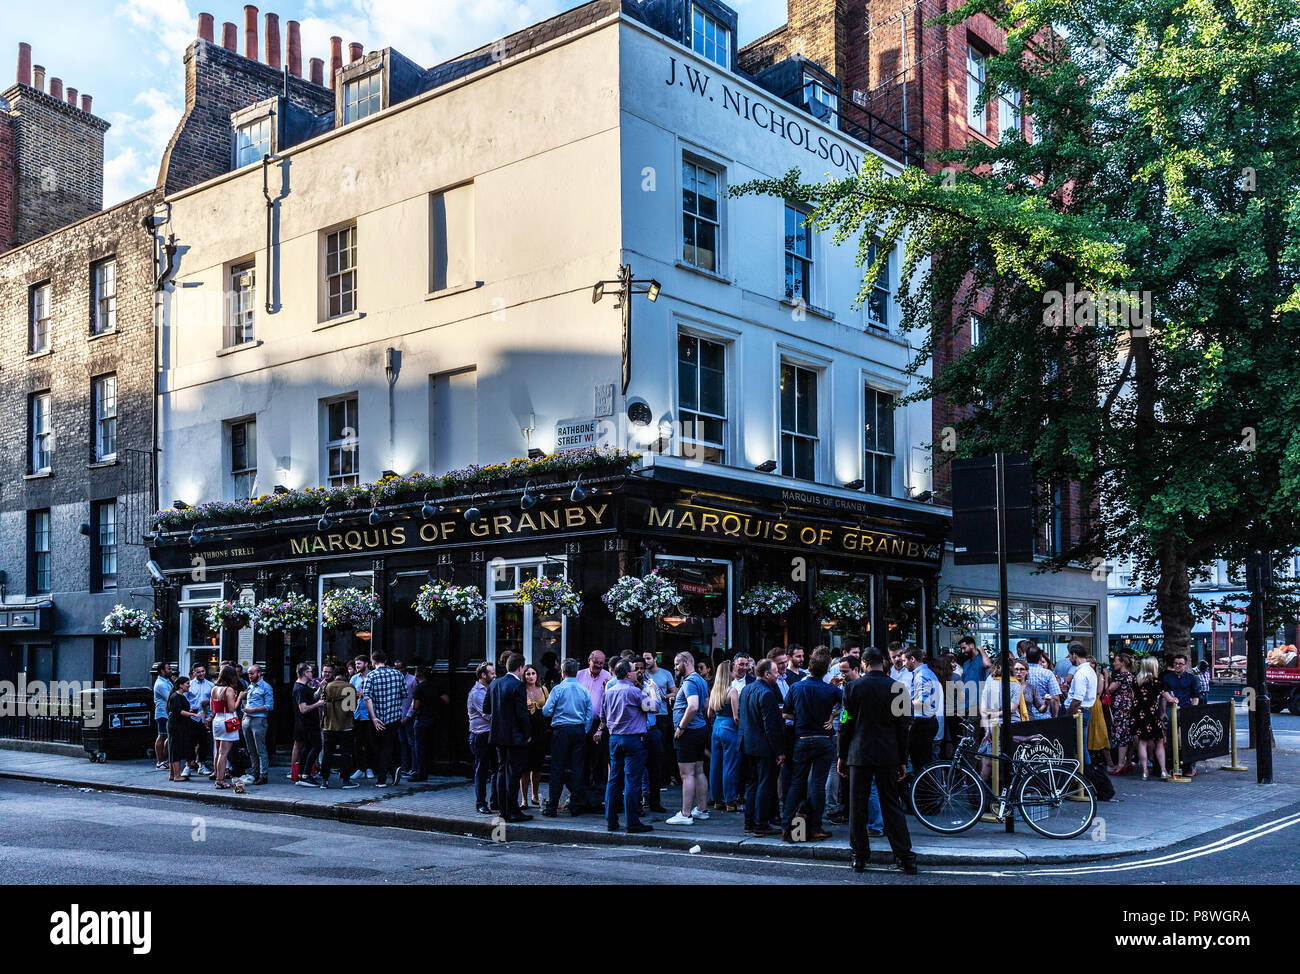 Folla estiva di patroni socializzanti e beventi fuori Marquis of Grinvy Pub, Rathbone Street, Fitzrovia, Londra, W1T, Inghilterra, Regno Unito. Foto Stock